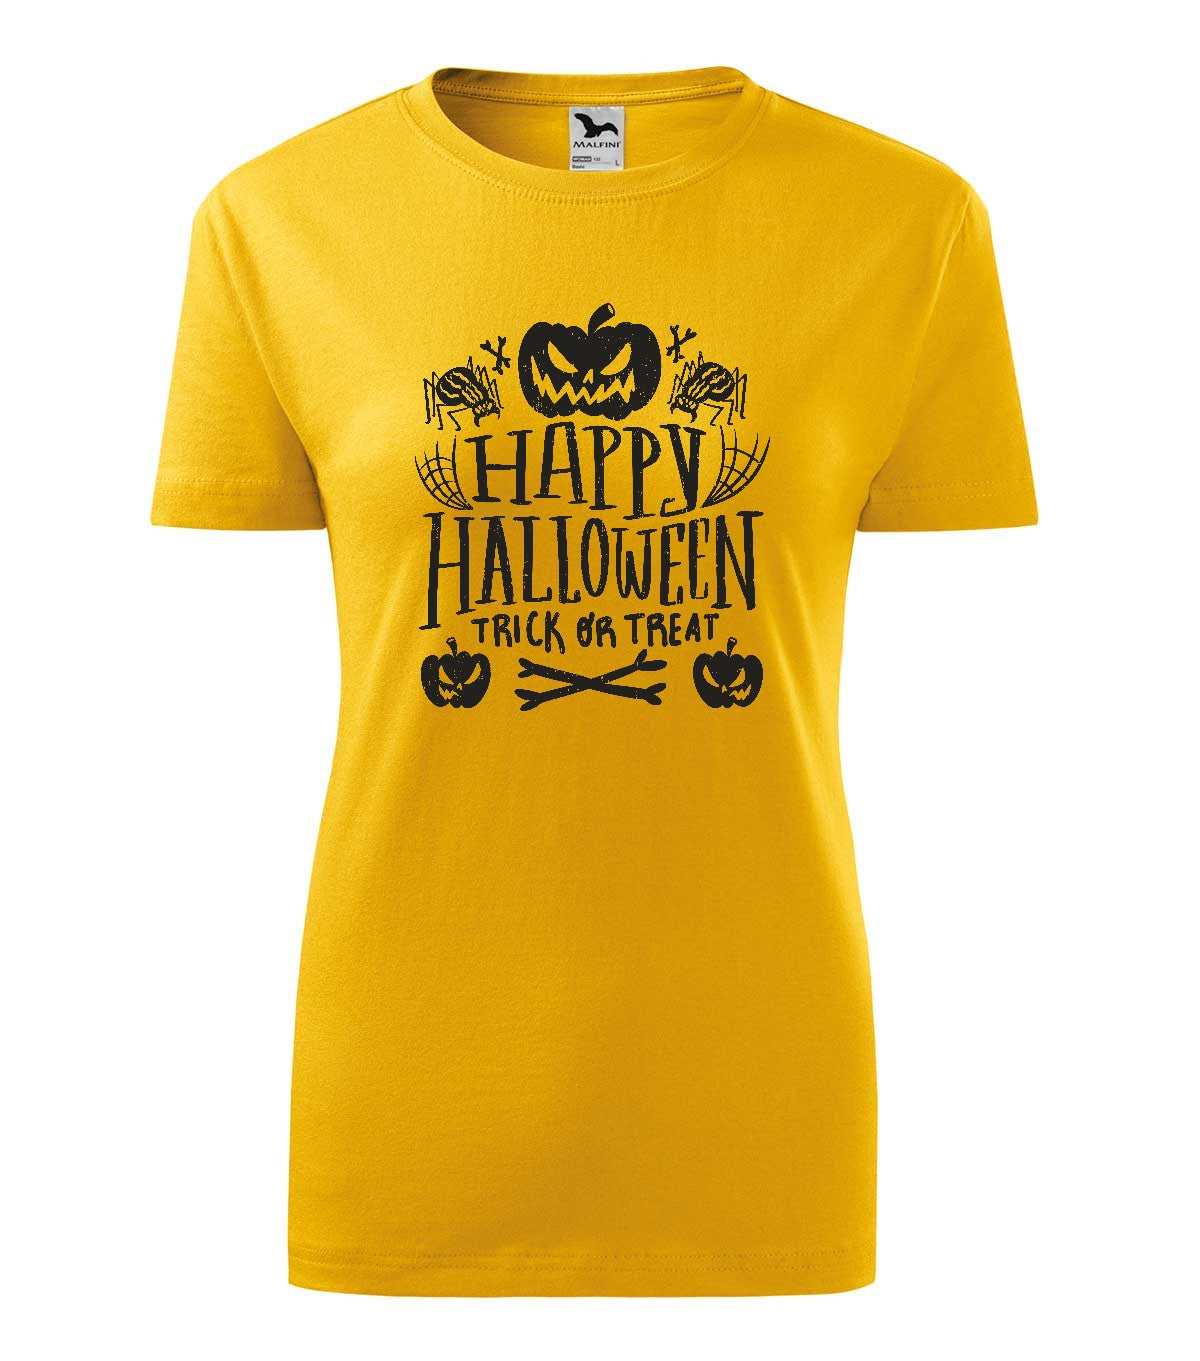 Happy Halloween 3 gyerek technikai póló